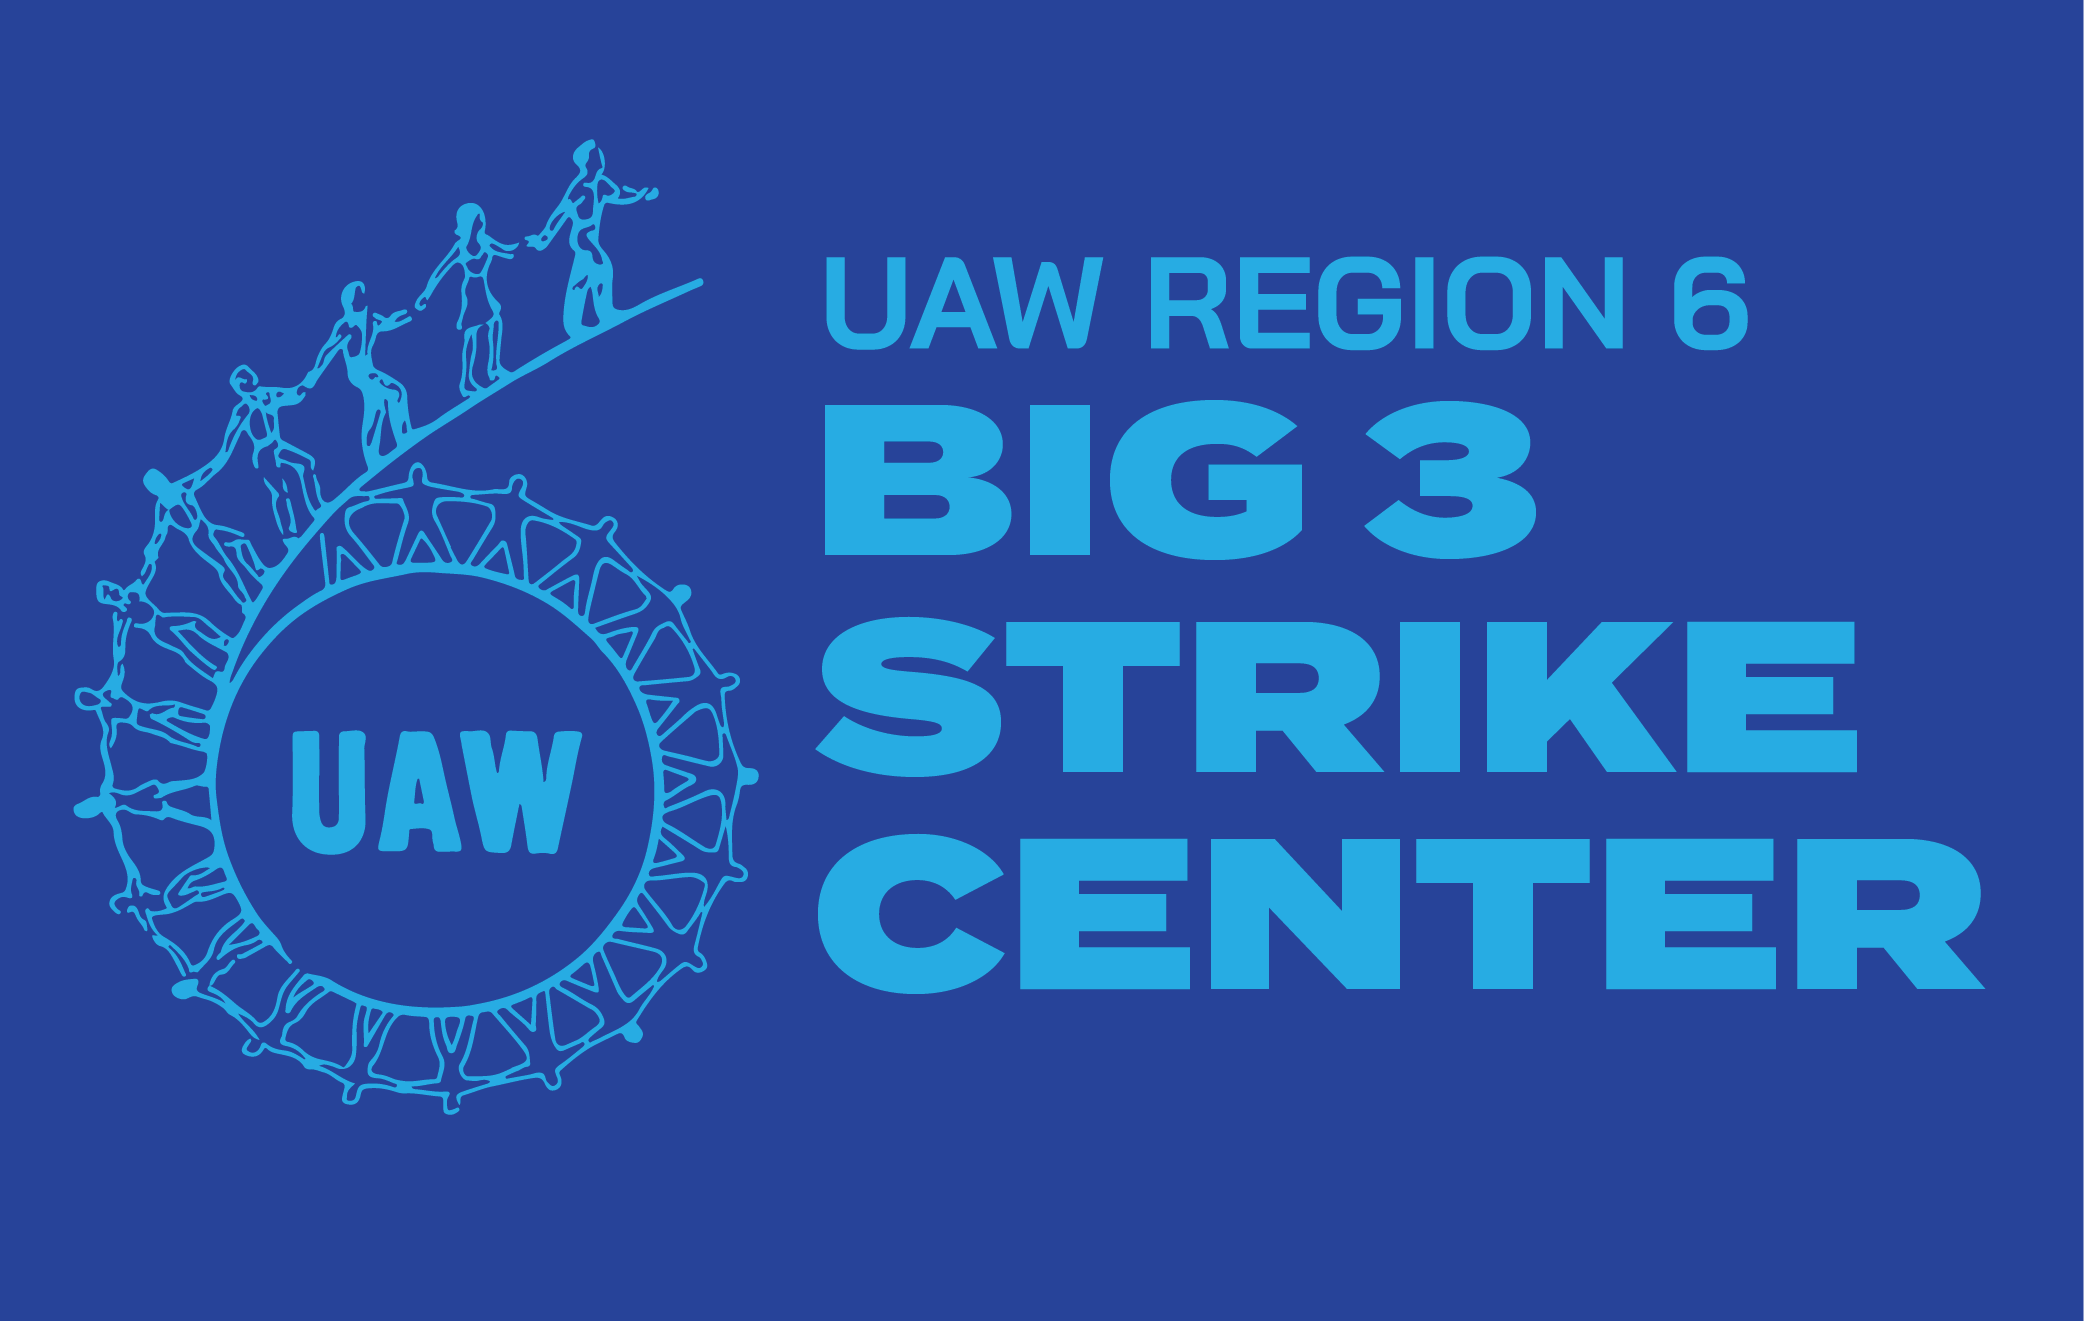 UAW Region 6 Big 3 Strike Center